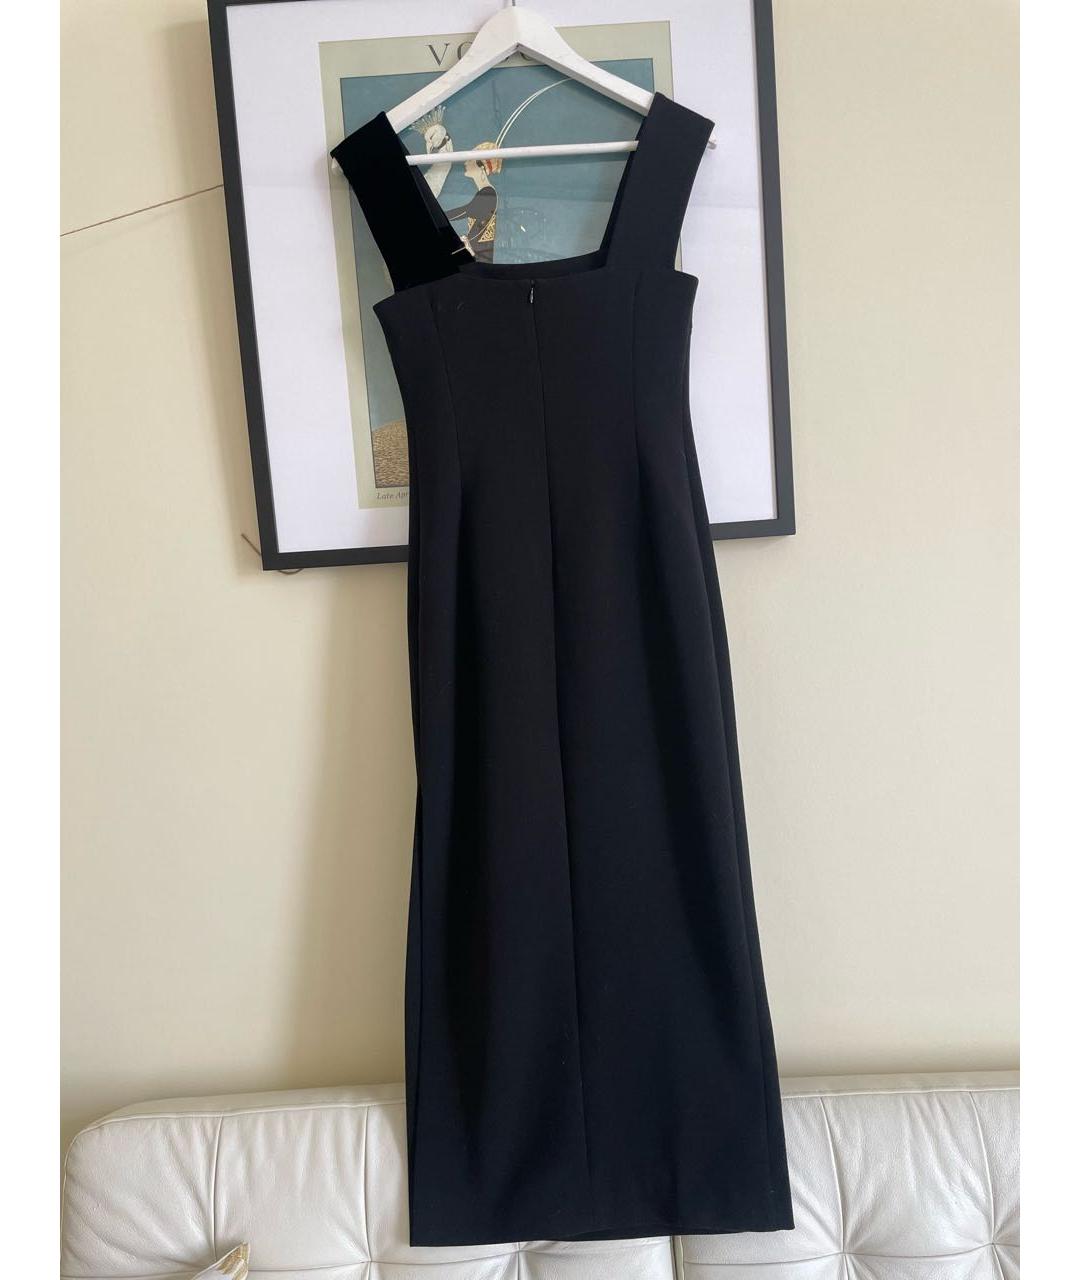 12 STOREEZ Черное вискозное коктейльное платье, фото 2